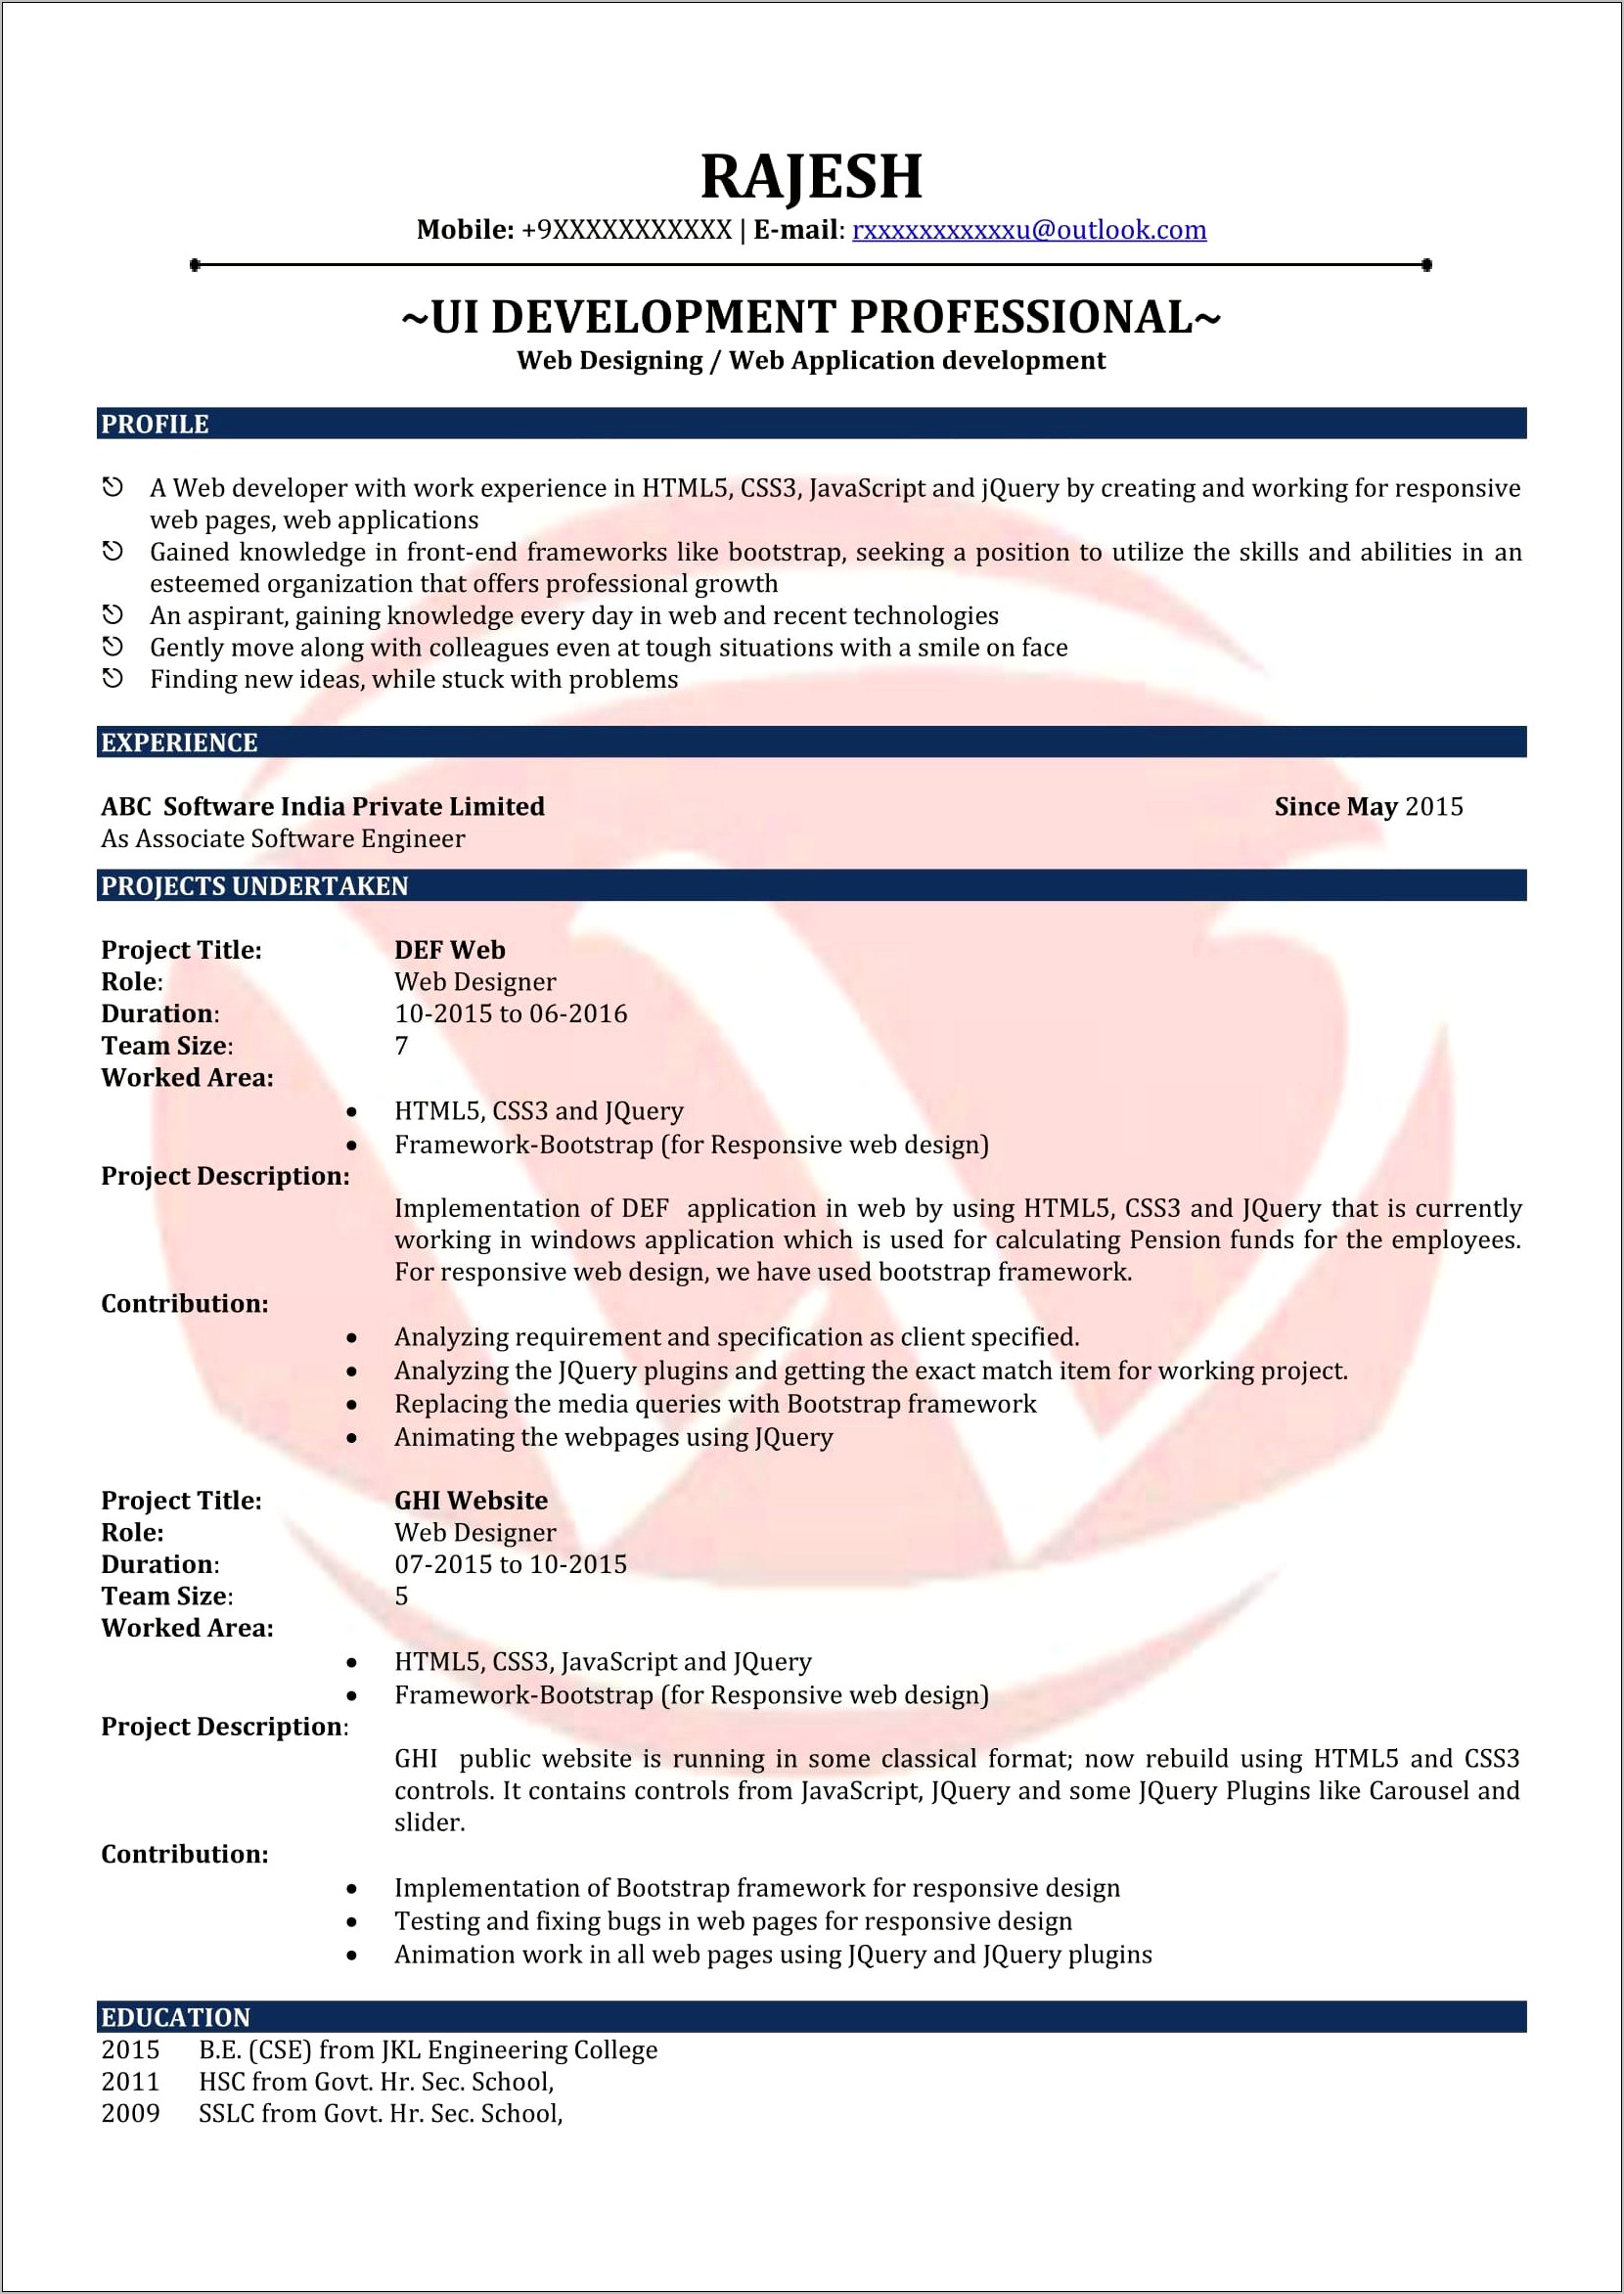 Sample Resume For Ui Developer Fresher